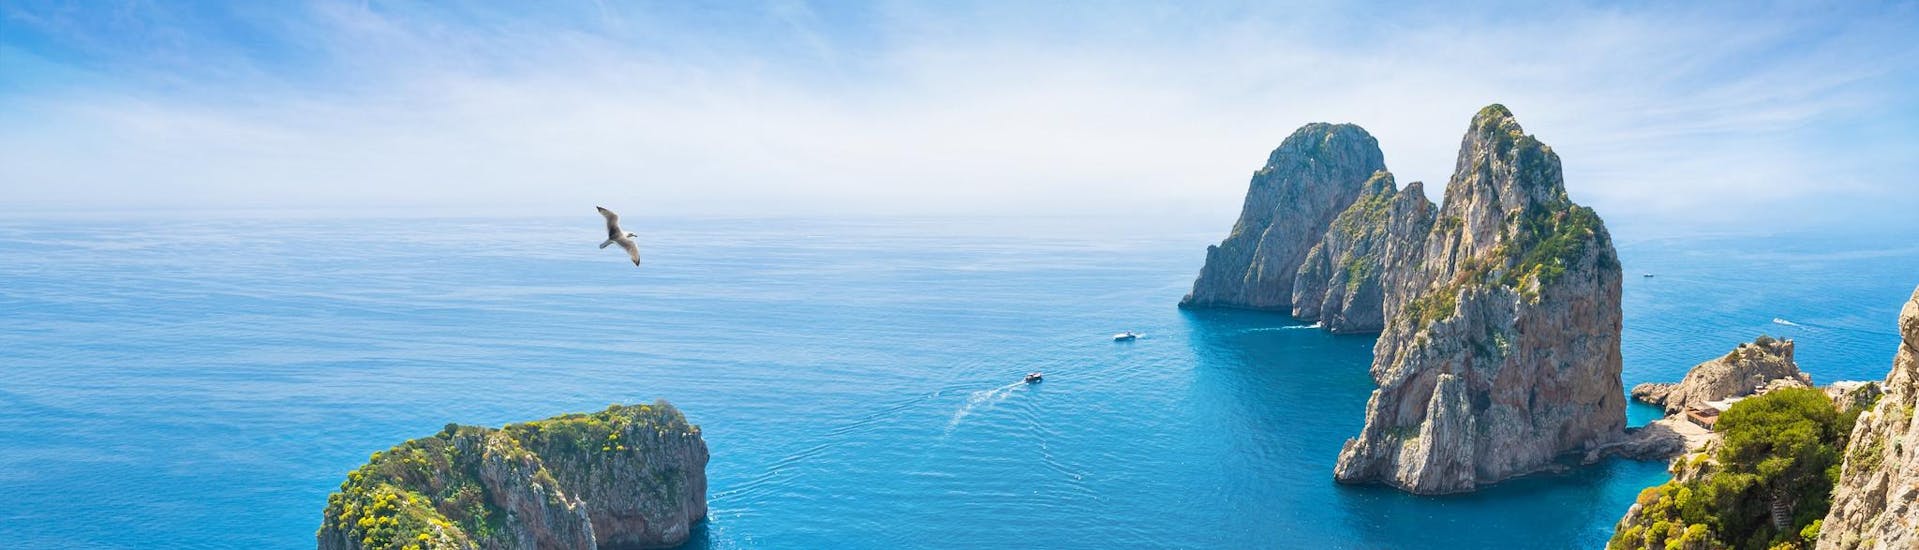 Vista aerea de barcos durante un paseo en barco a Capri.